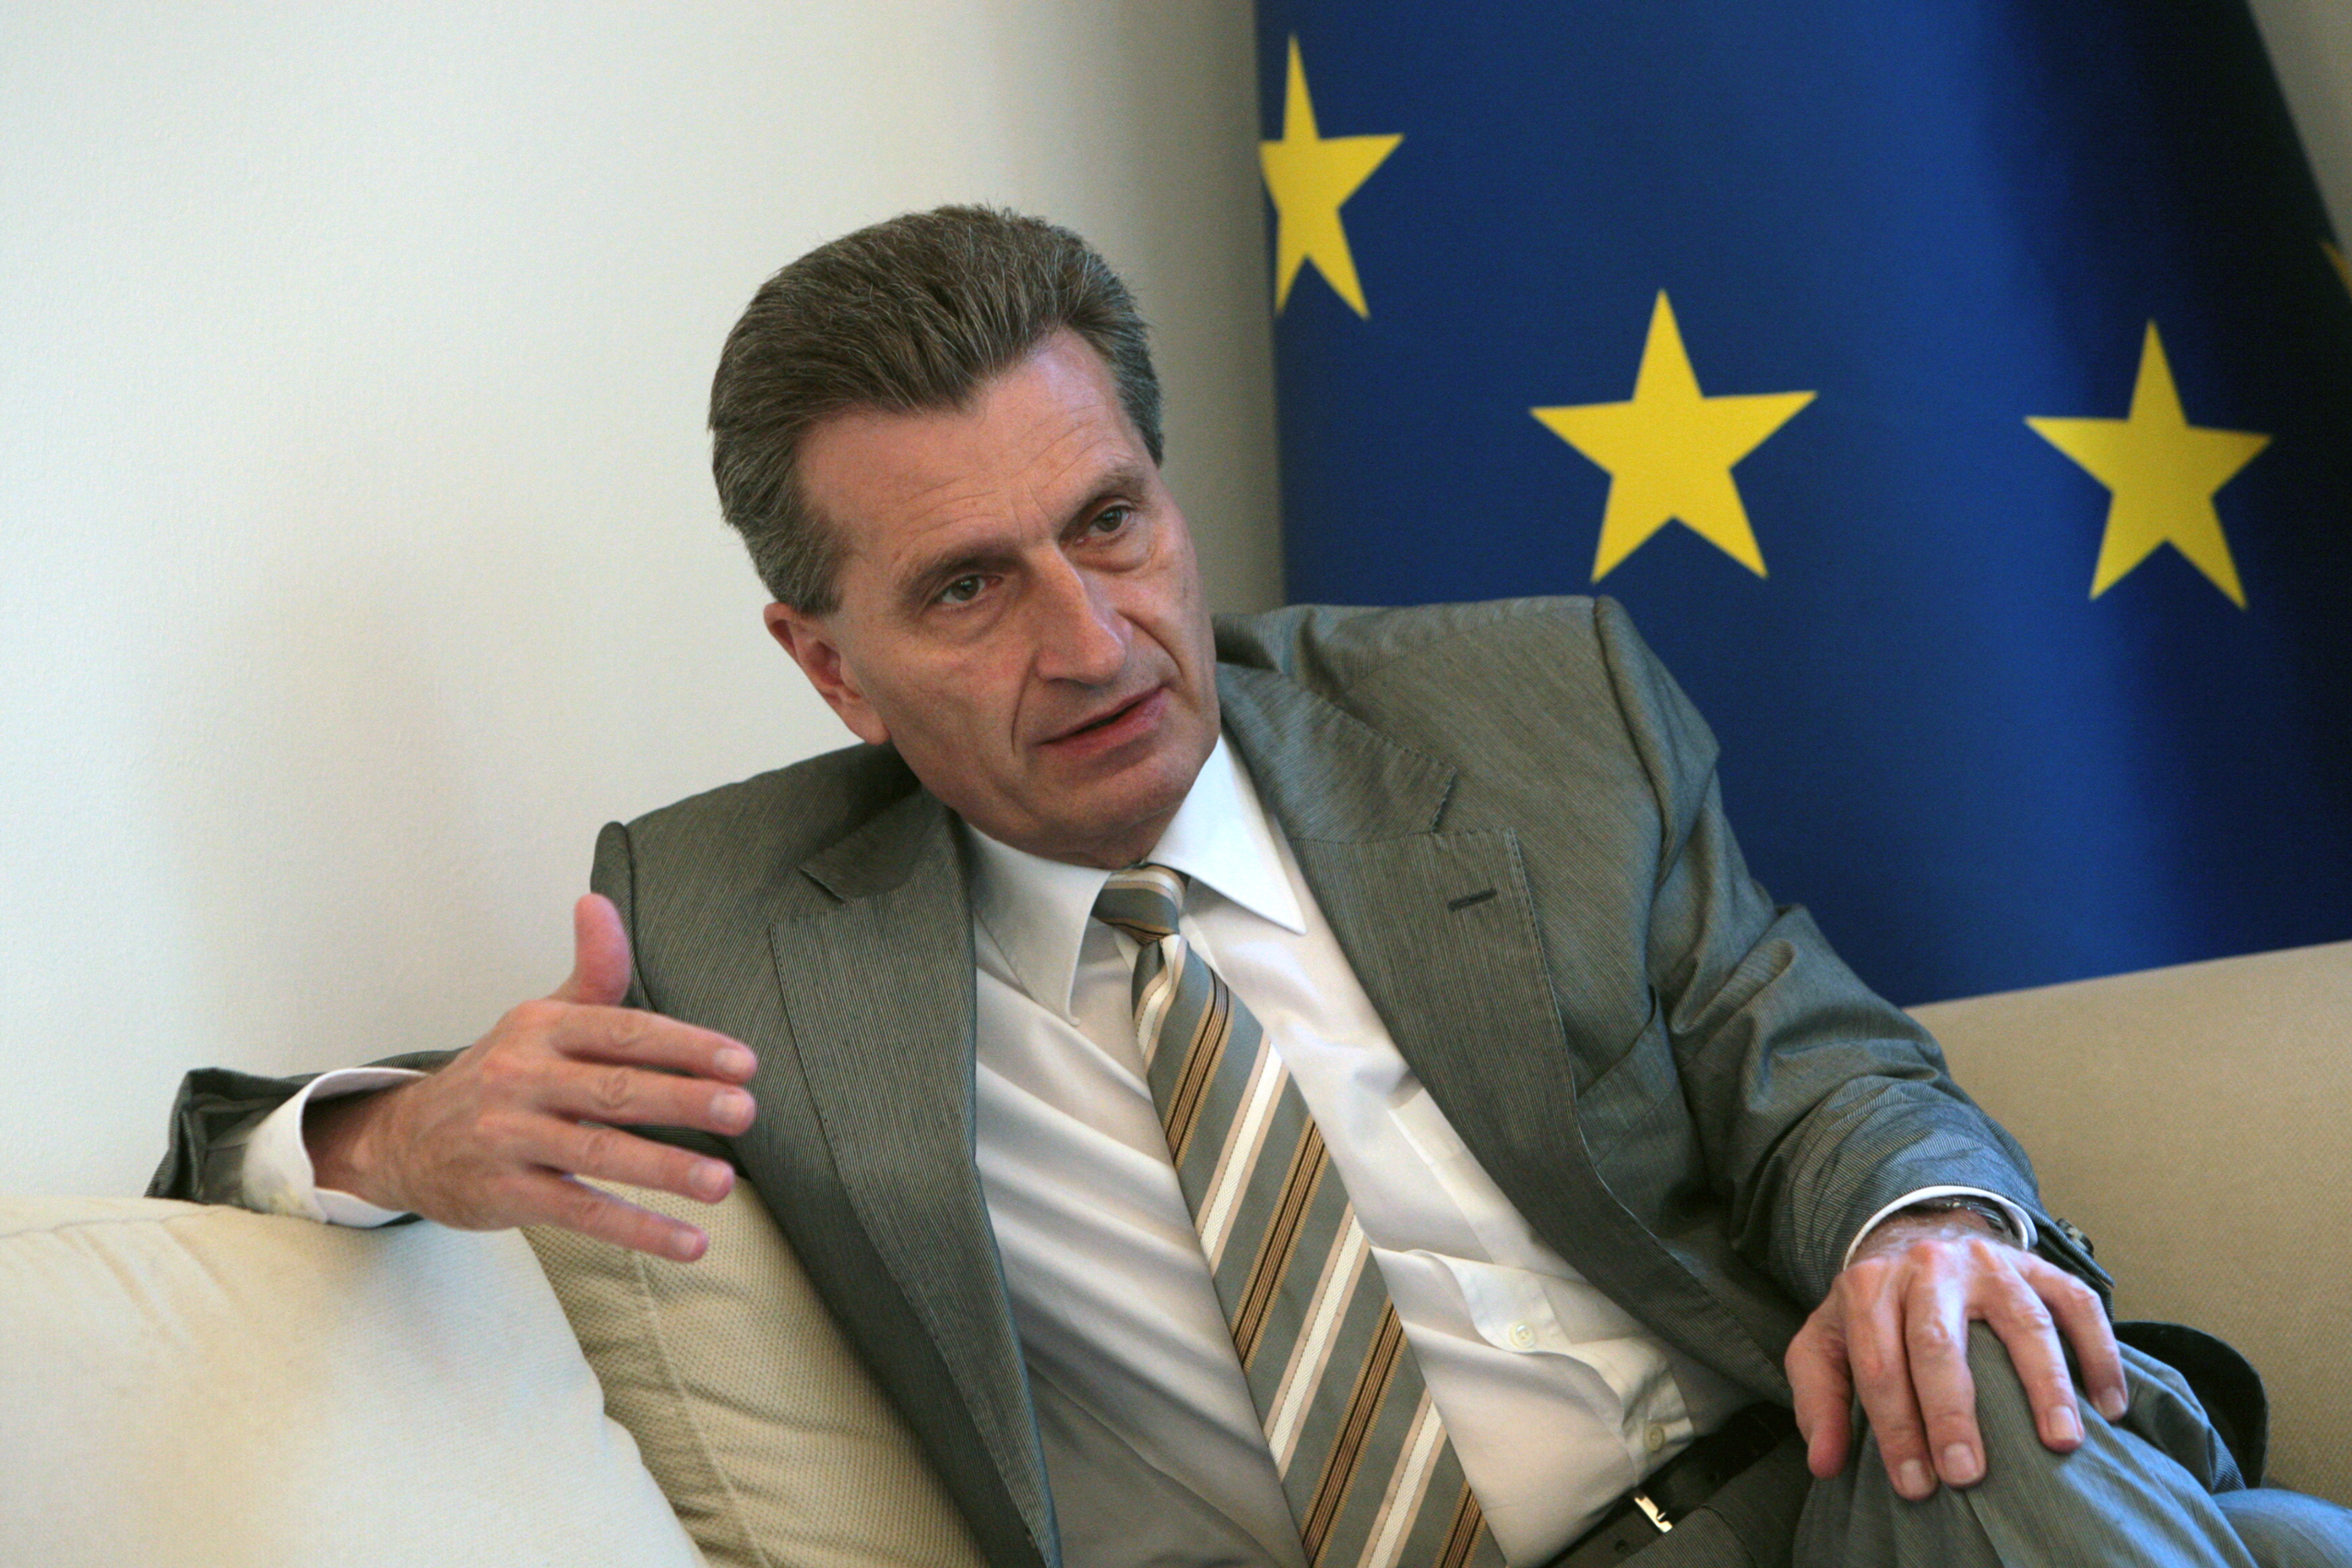 Danke, Oettinger! Markus Beckedahl verabschiedet sich vom Digitalkommissar